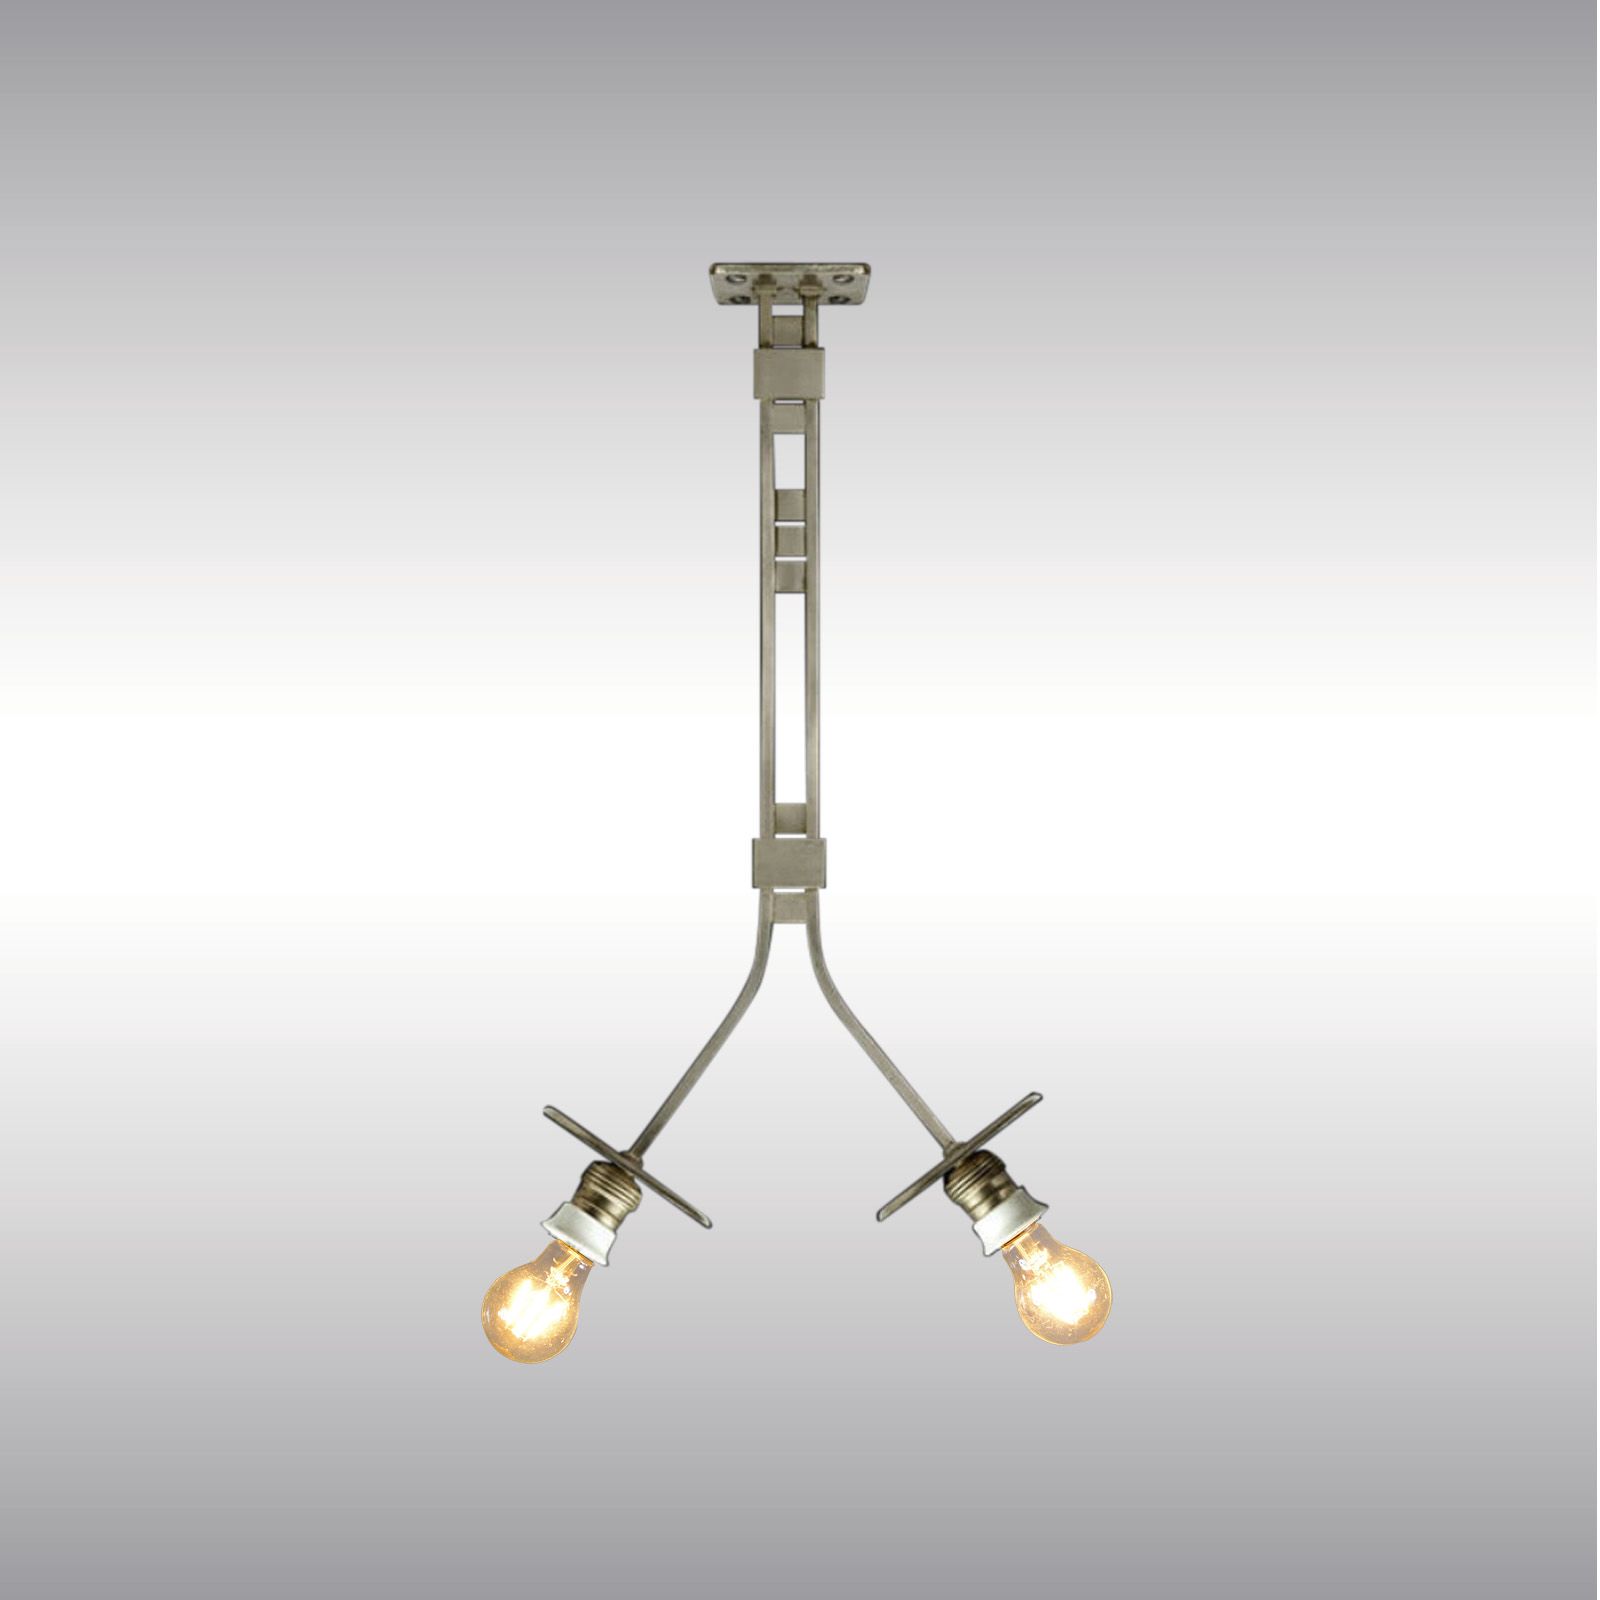 WOKA LAMPS VIENNA - OrderNr.: 21614|Die Zeit - Design: Otto Wagner